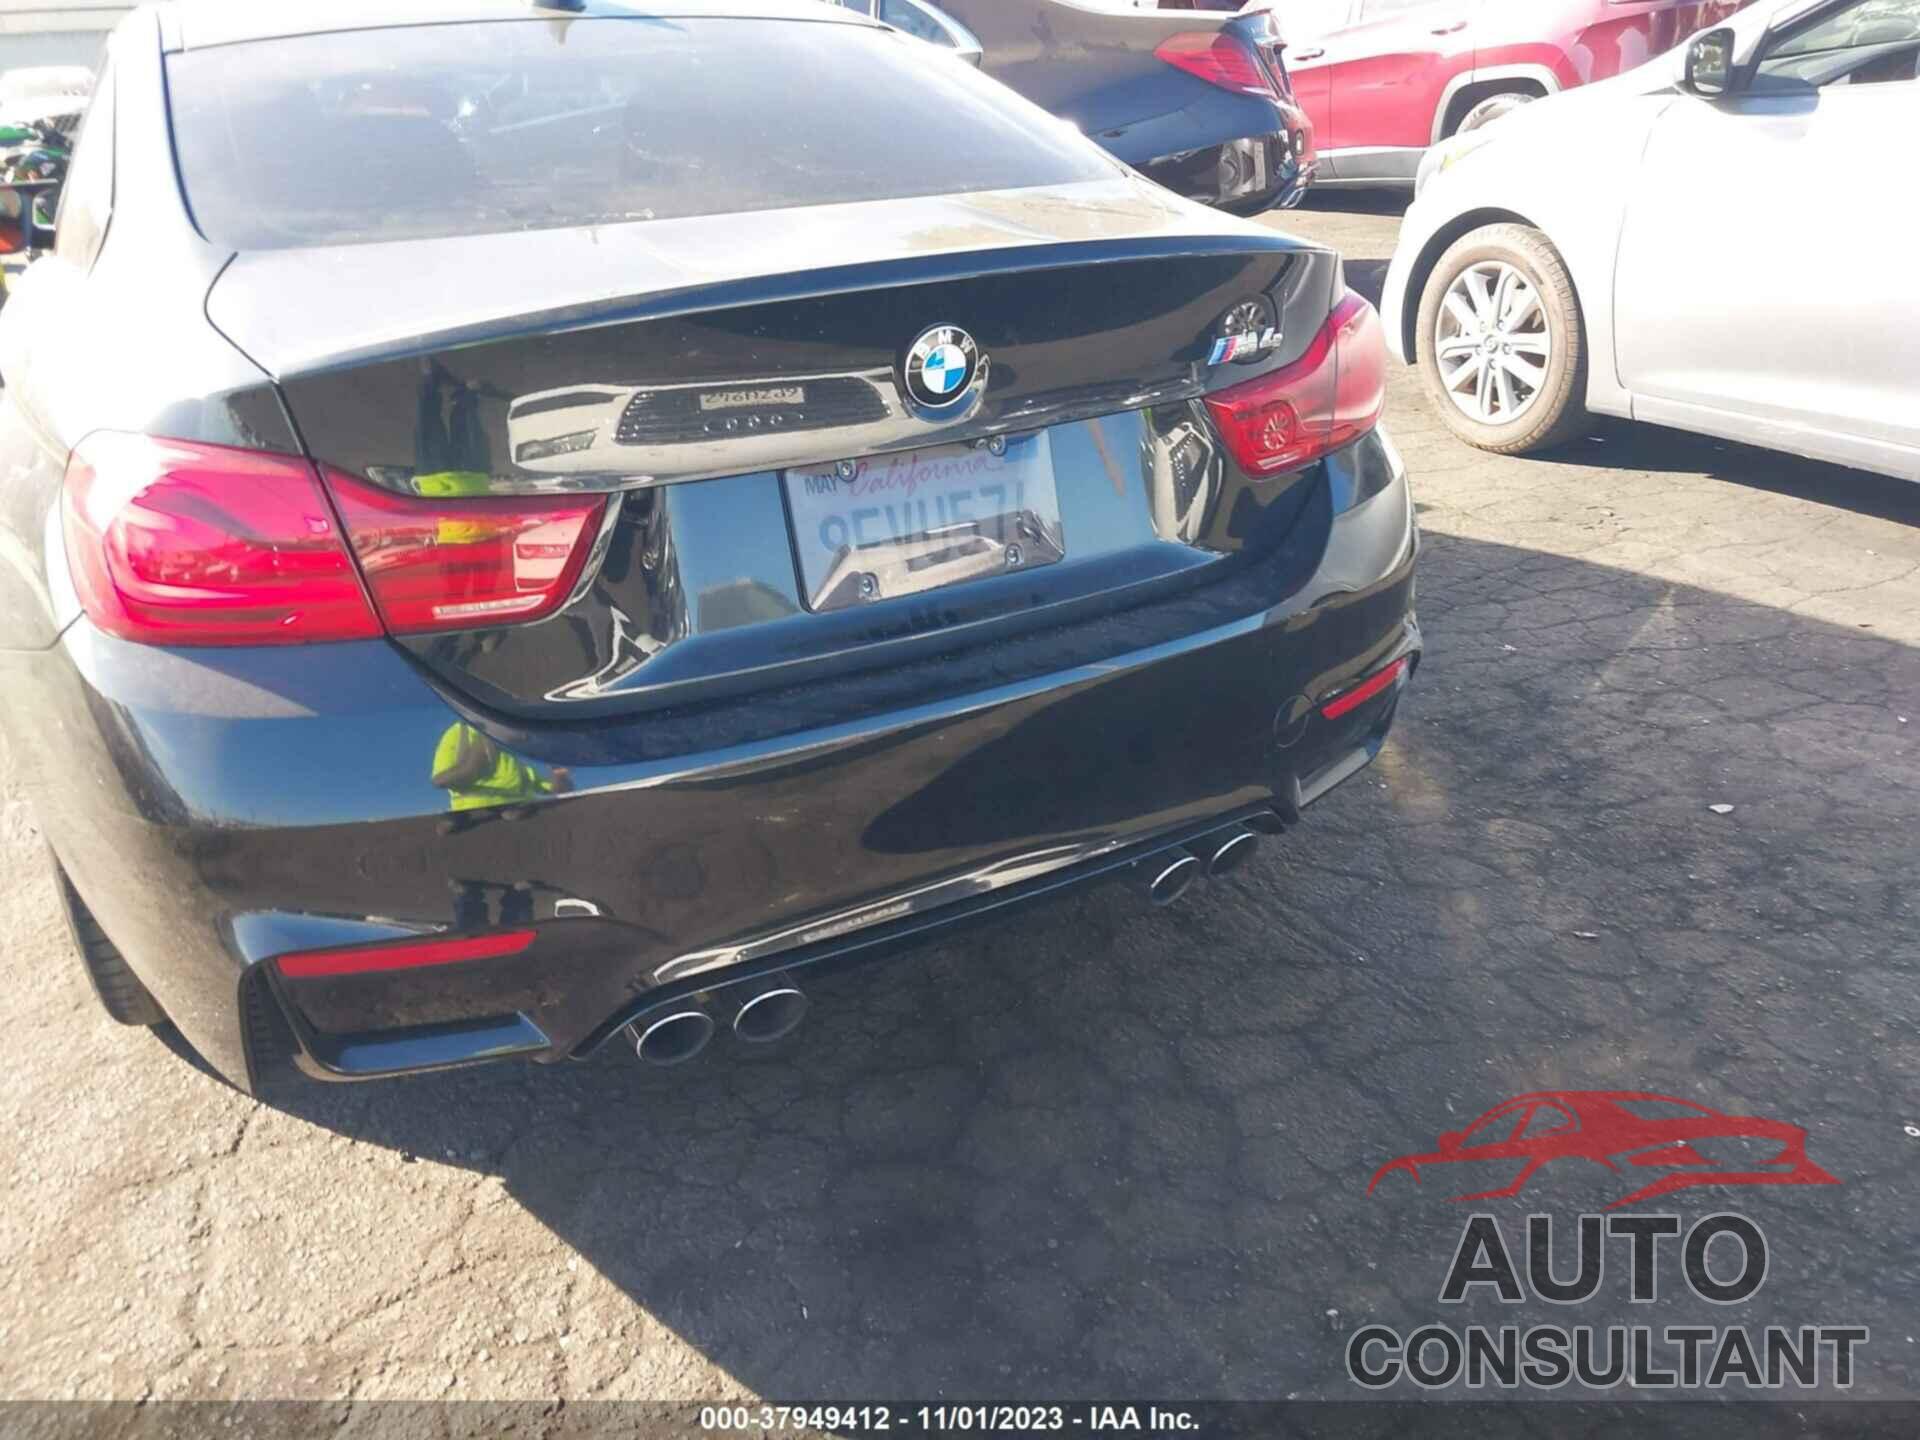 BMW M4 2018 - WBS4Y9C56JAC87941